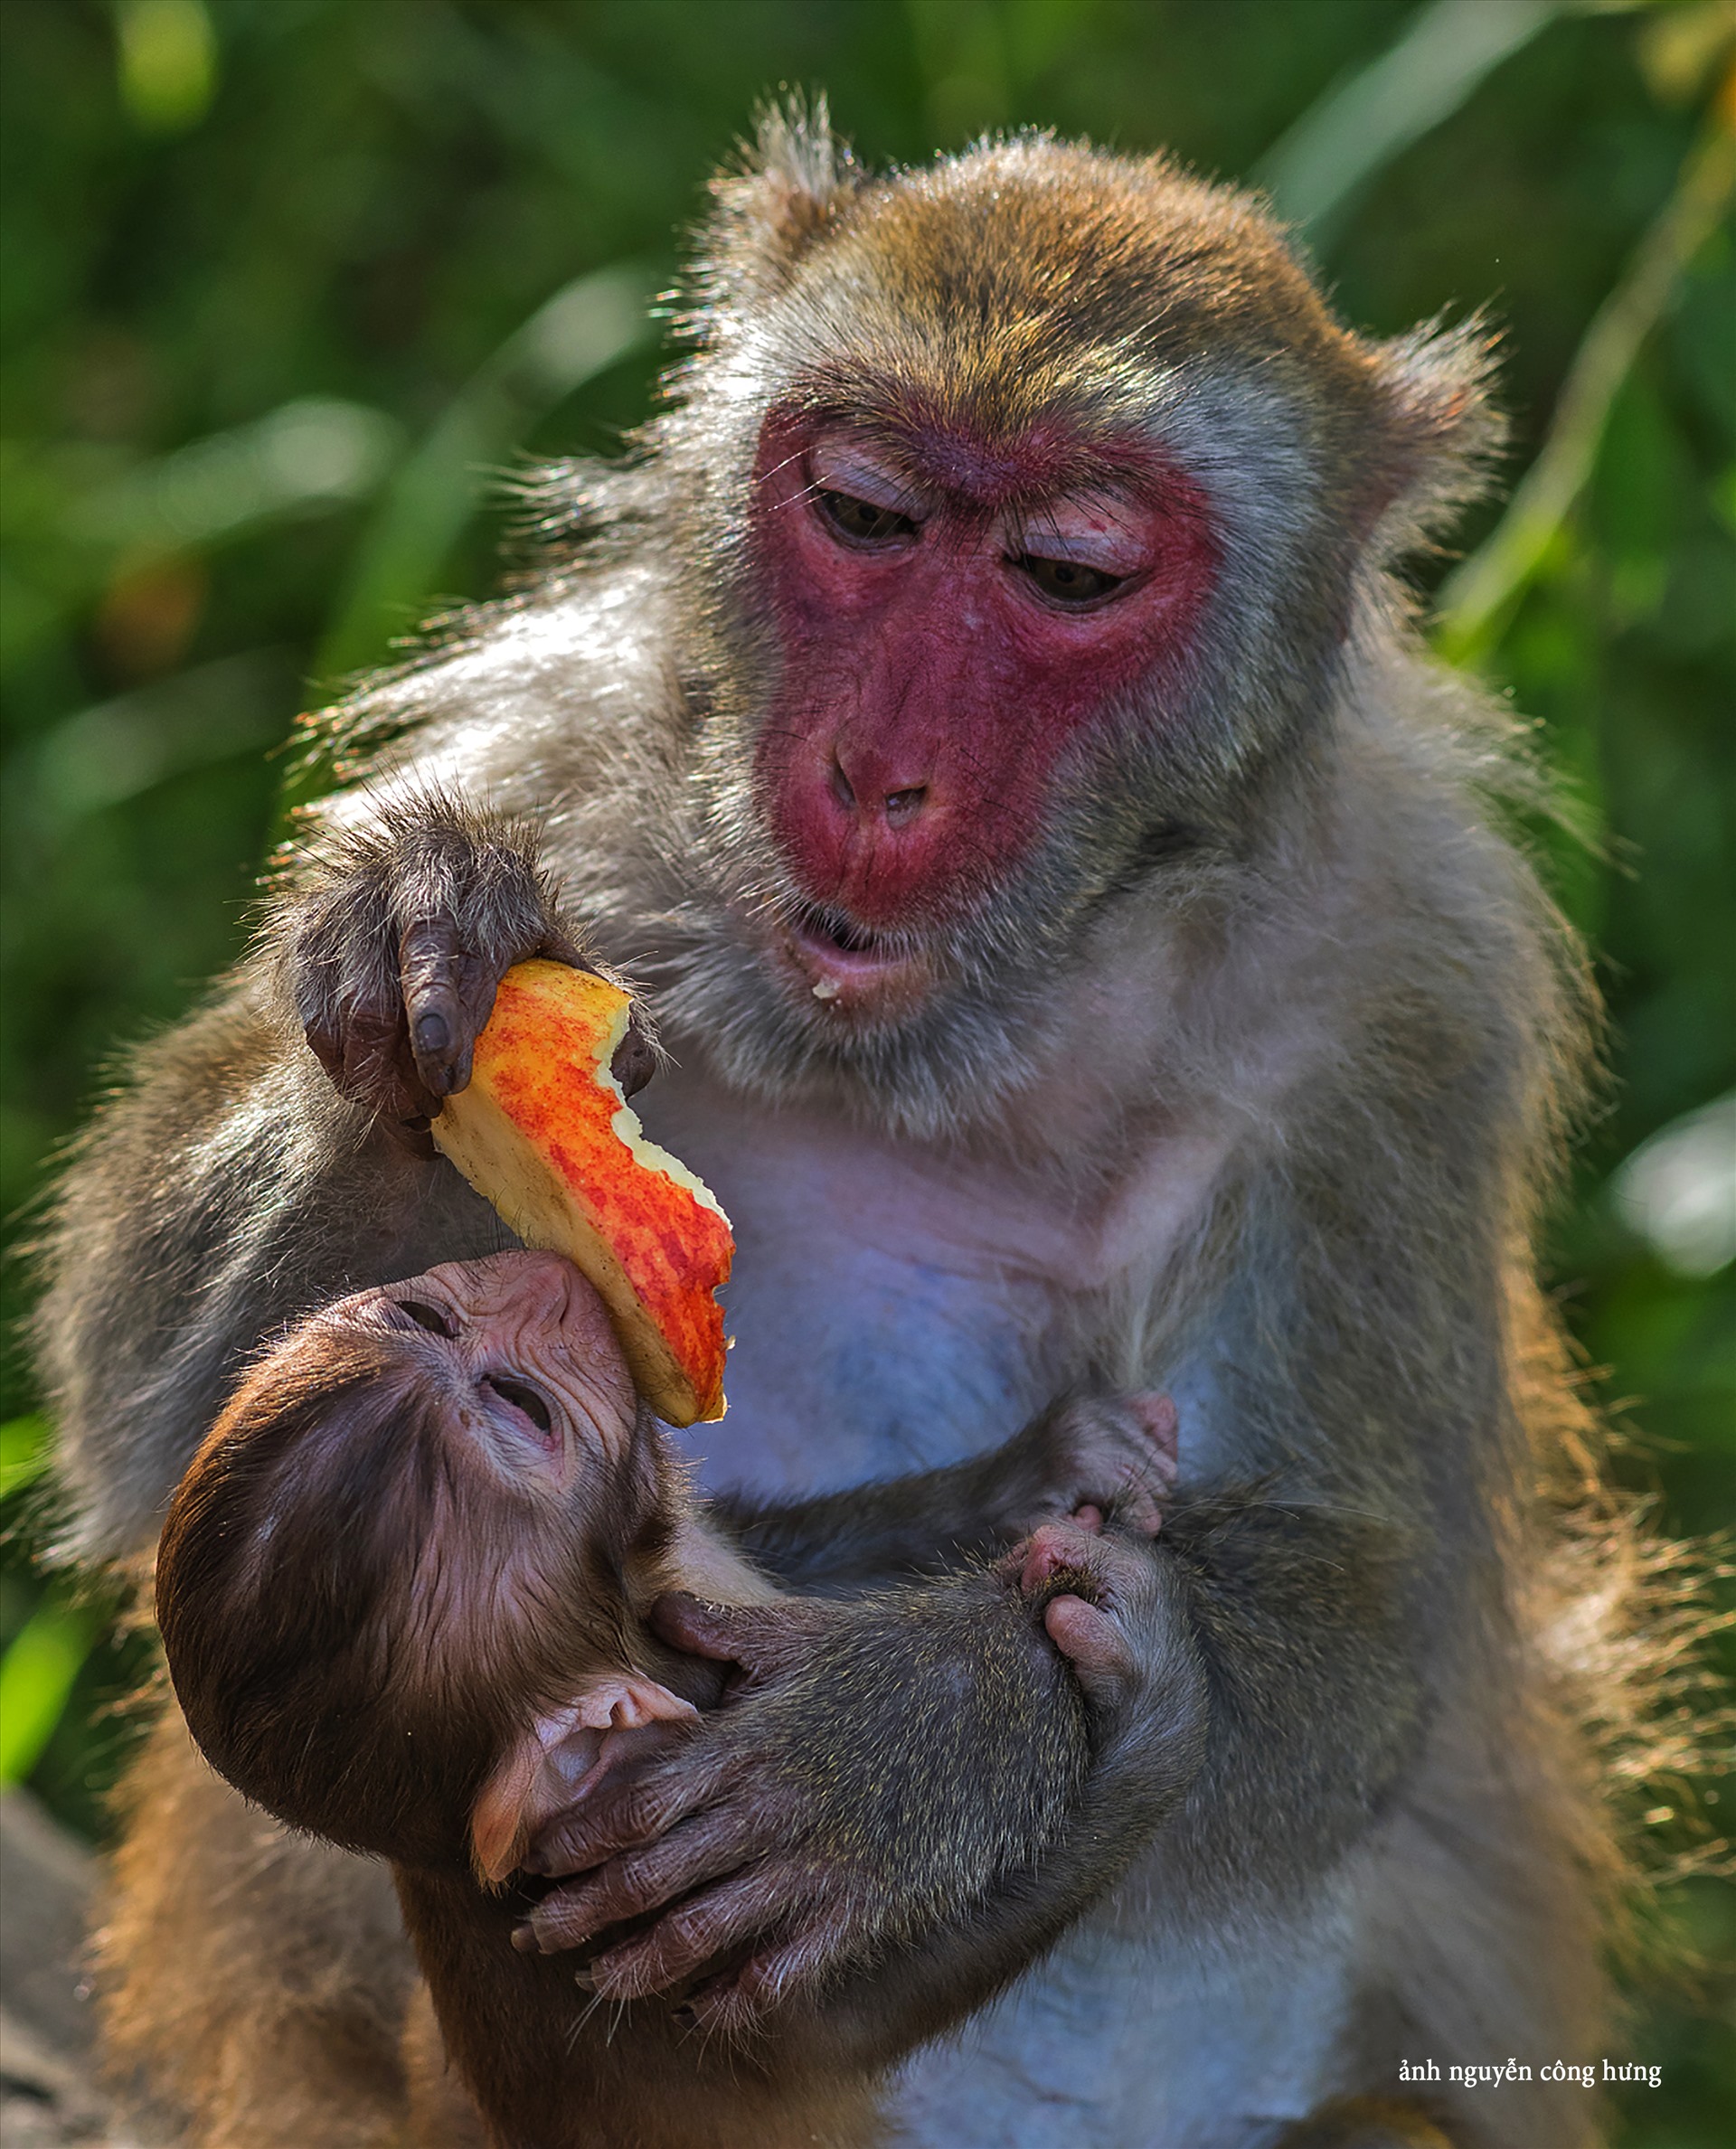 Đảo Khỉ là điểm đến lý tưởng cho những ai yêu với sinh vật dễ thương và tò mò muốn khám phá thế giới tự nhiên. Hình ảnh sẽ đưa bạn đến với một thiên đường đầy sự sống động với rất nhiều loài khỉ với màu sắc đa dạng và tính cách đặc trưng.